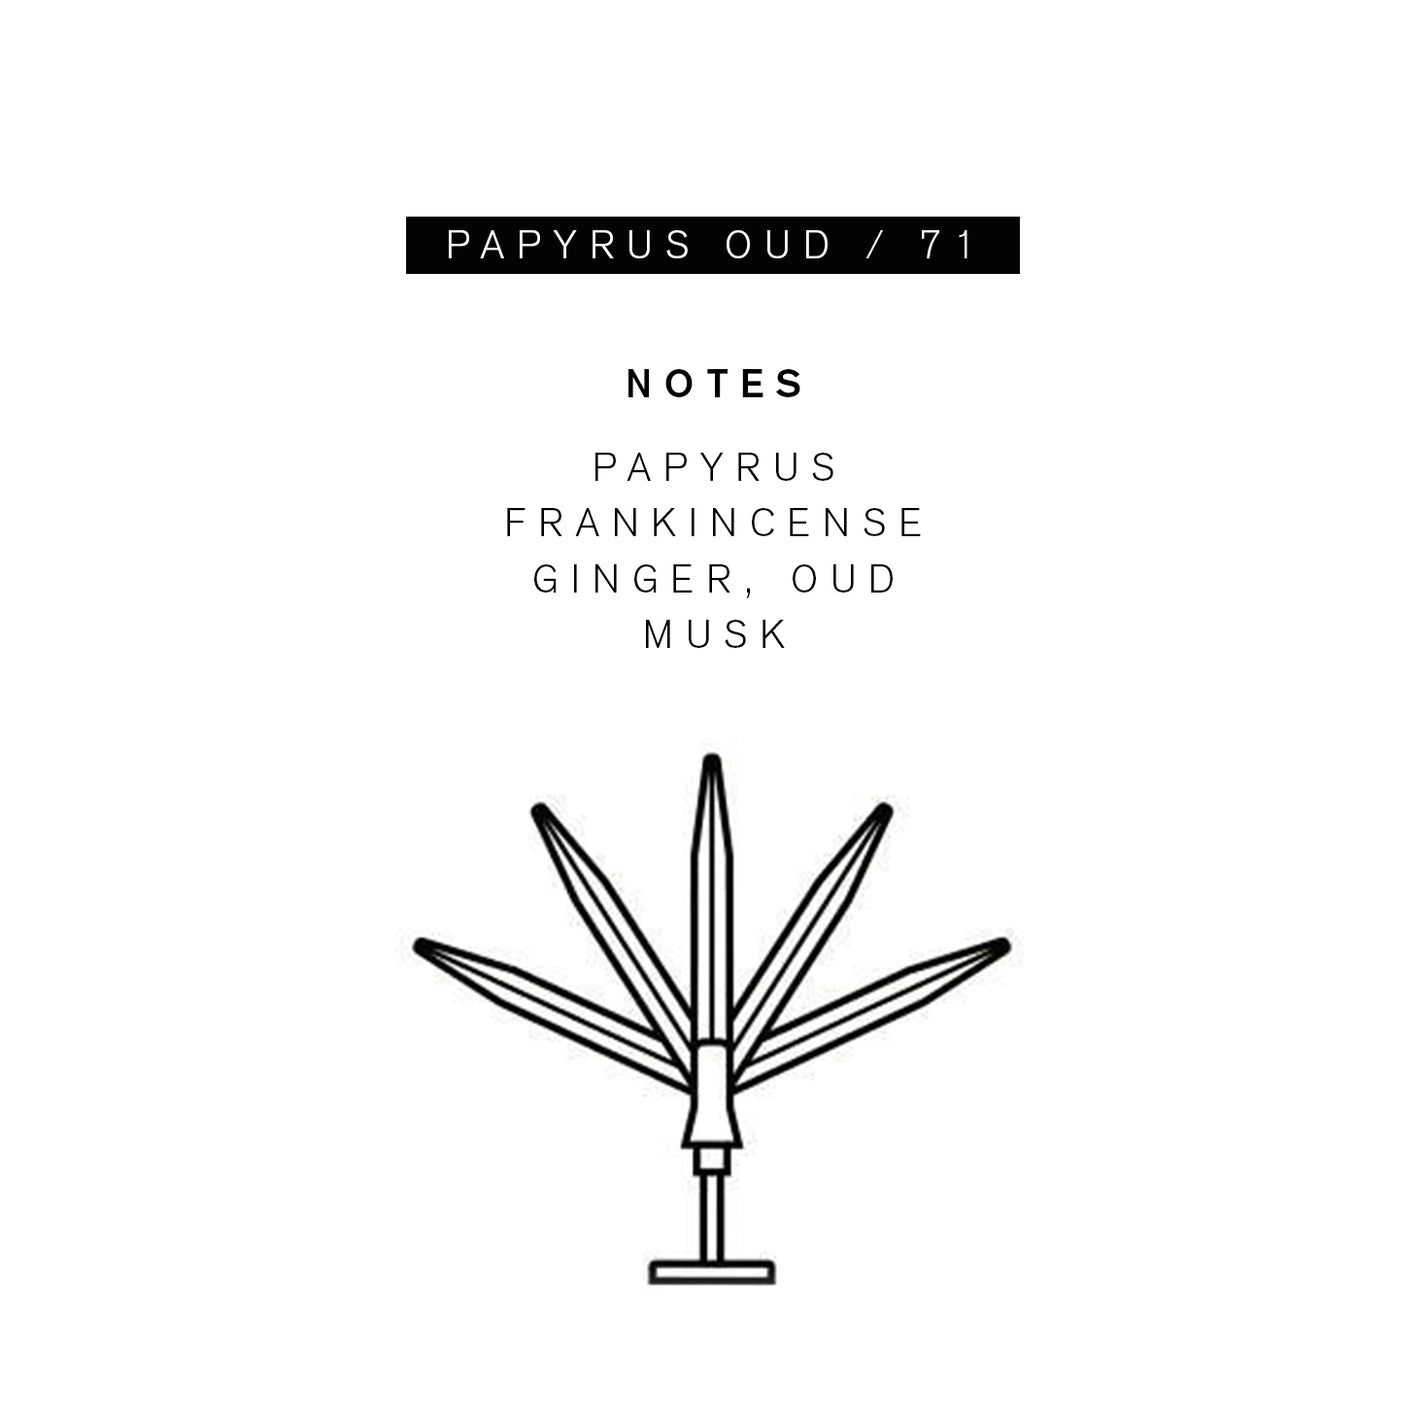 Sample Vial - Parle Moi Papyrus Oud / 71 Eau de Parfum